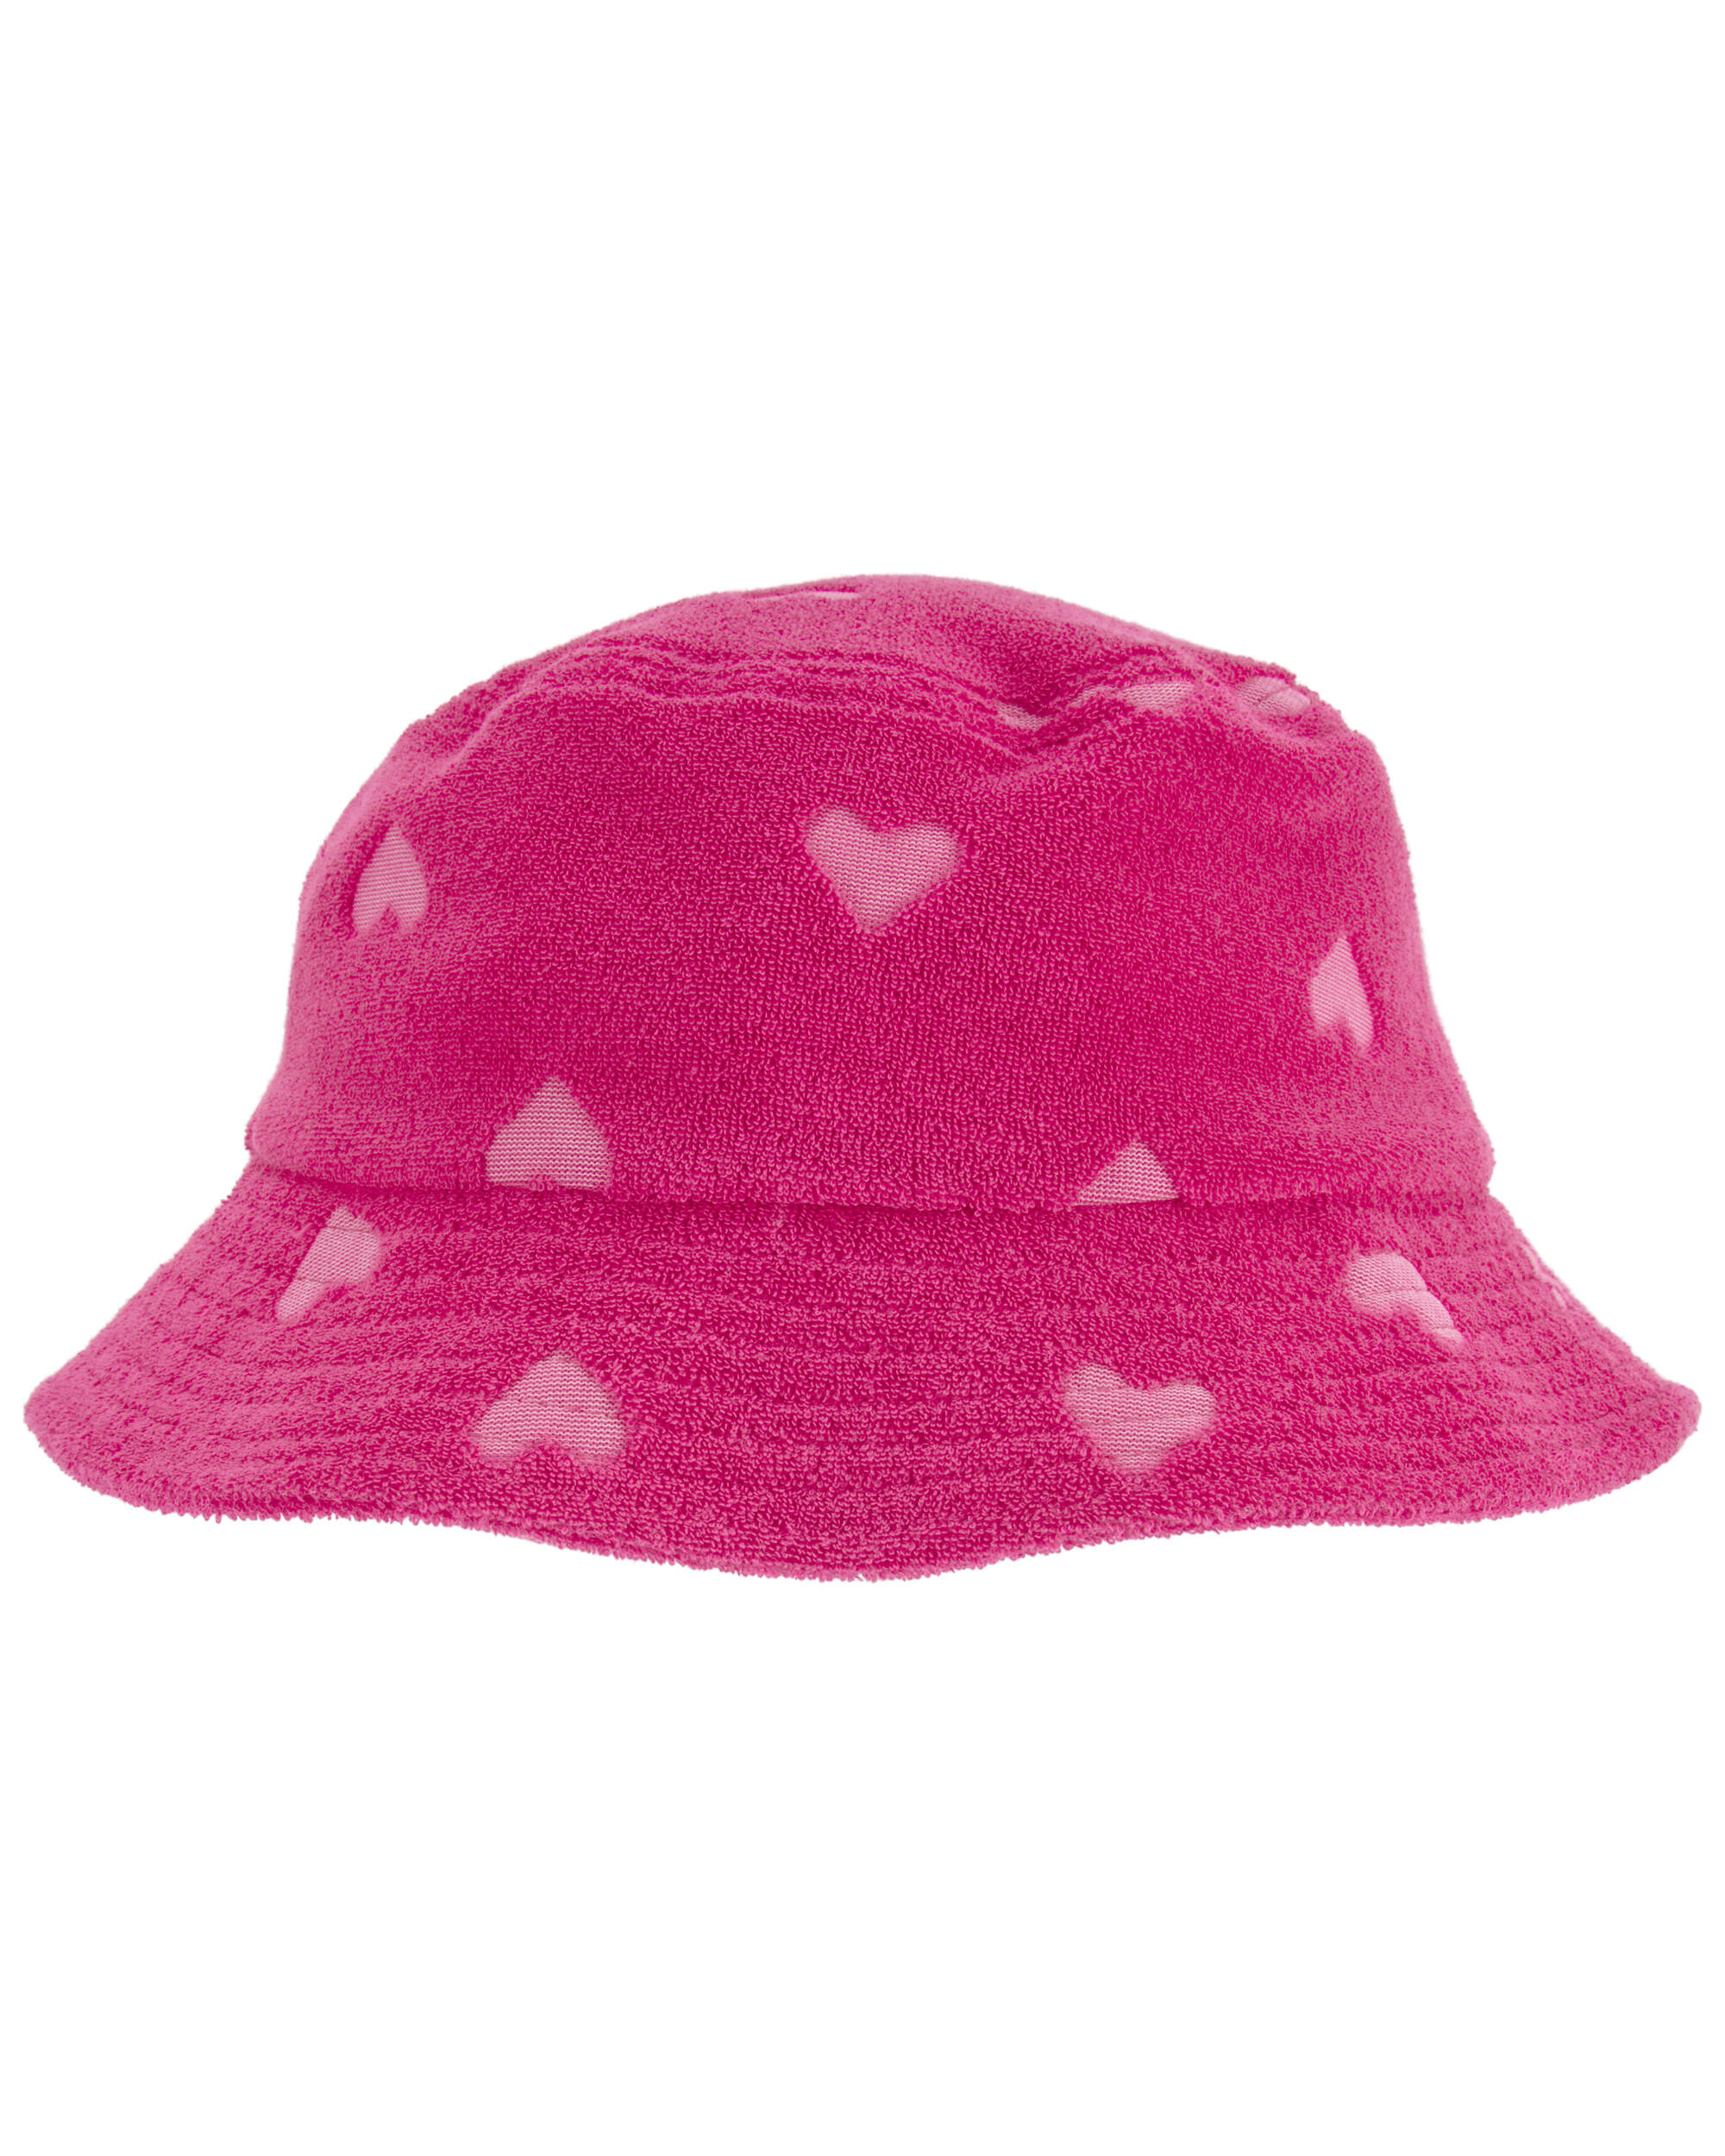 Heart Bucket Hat